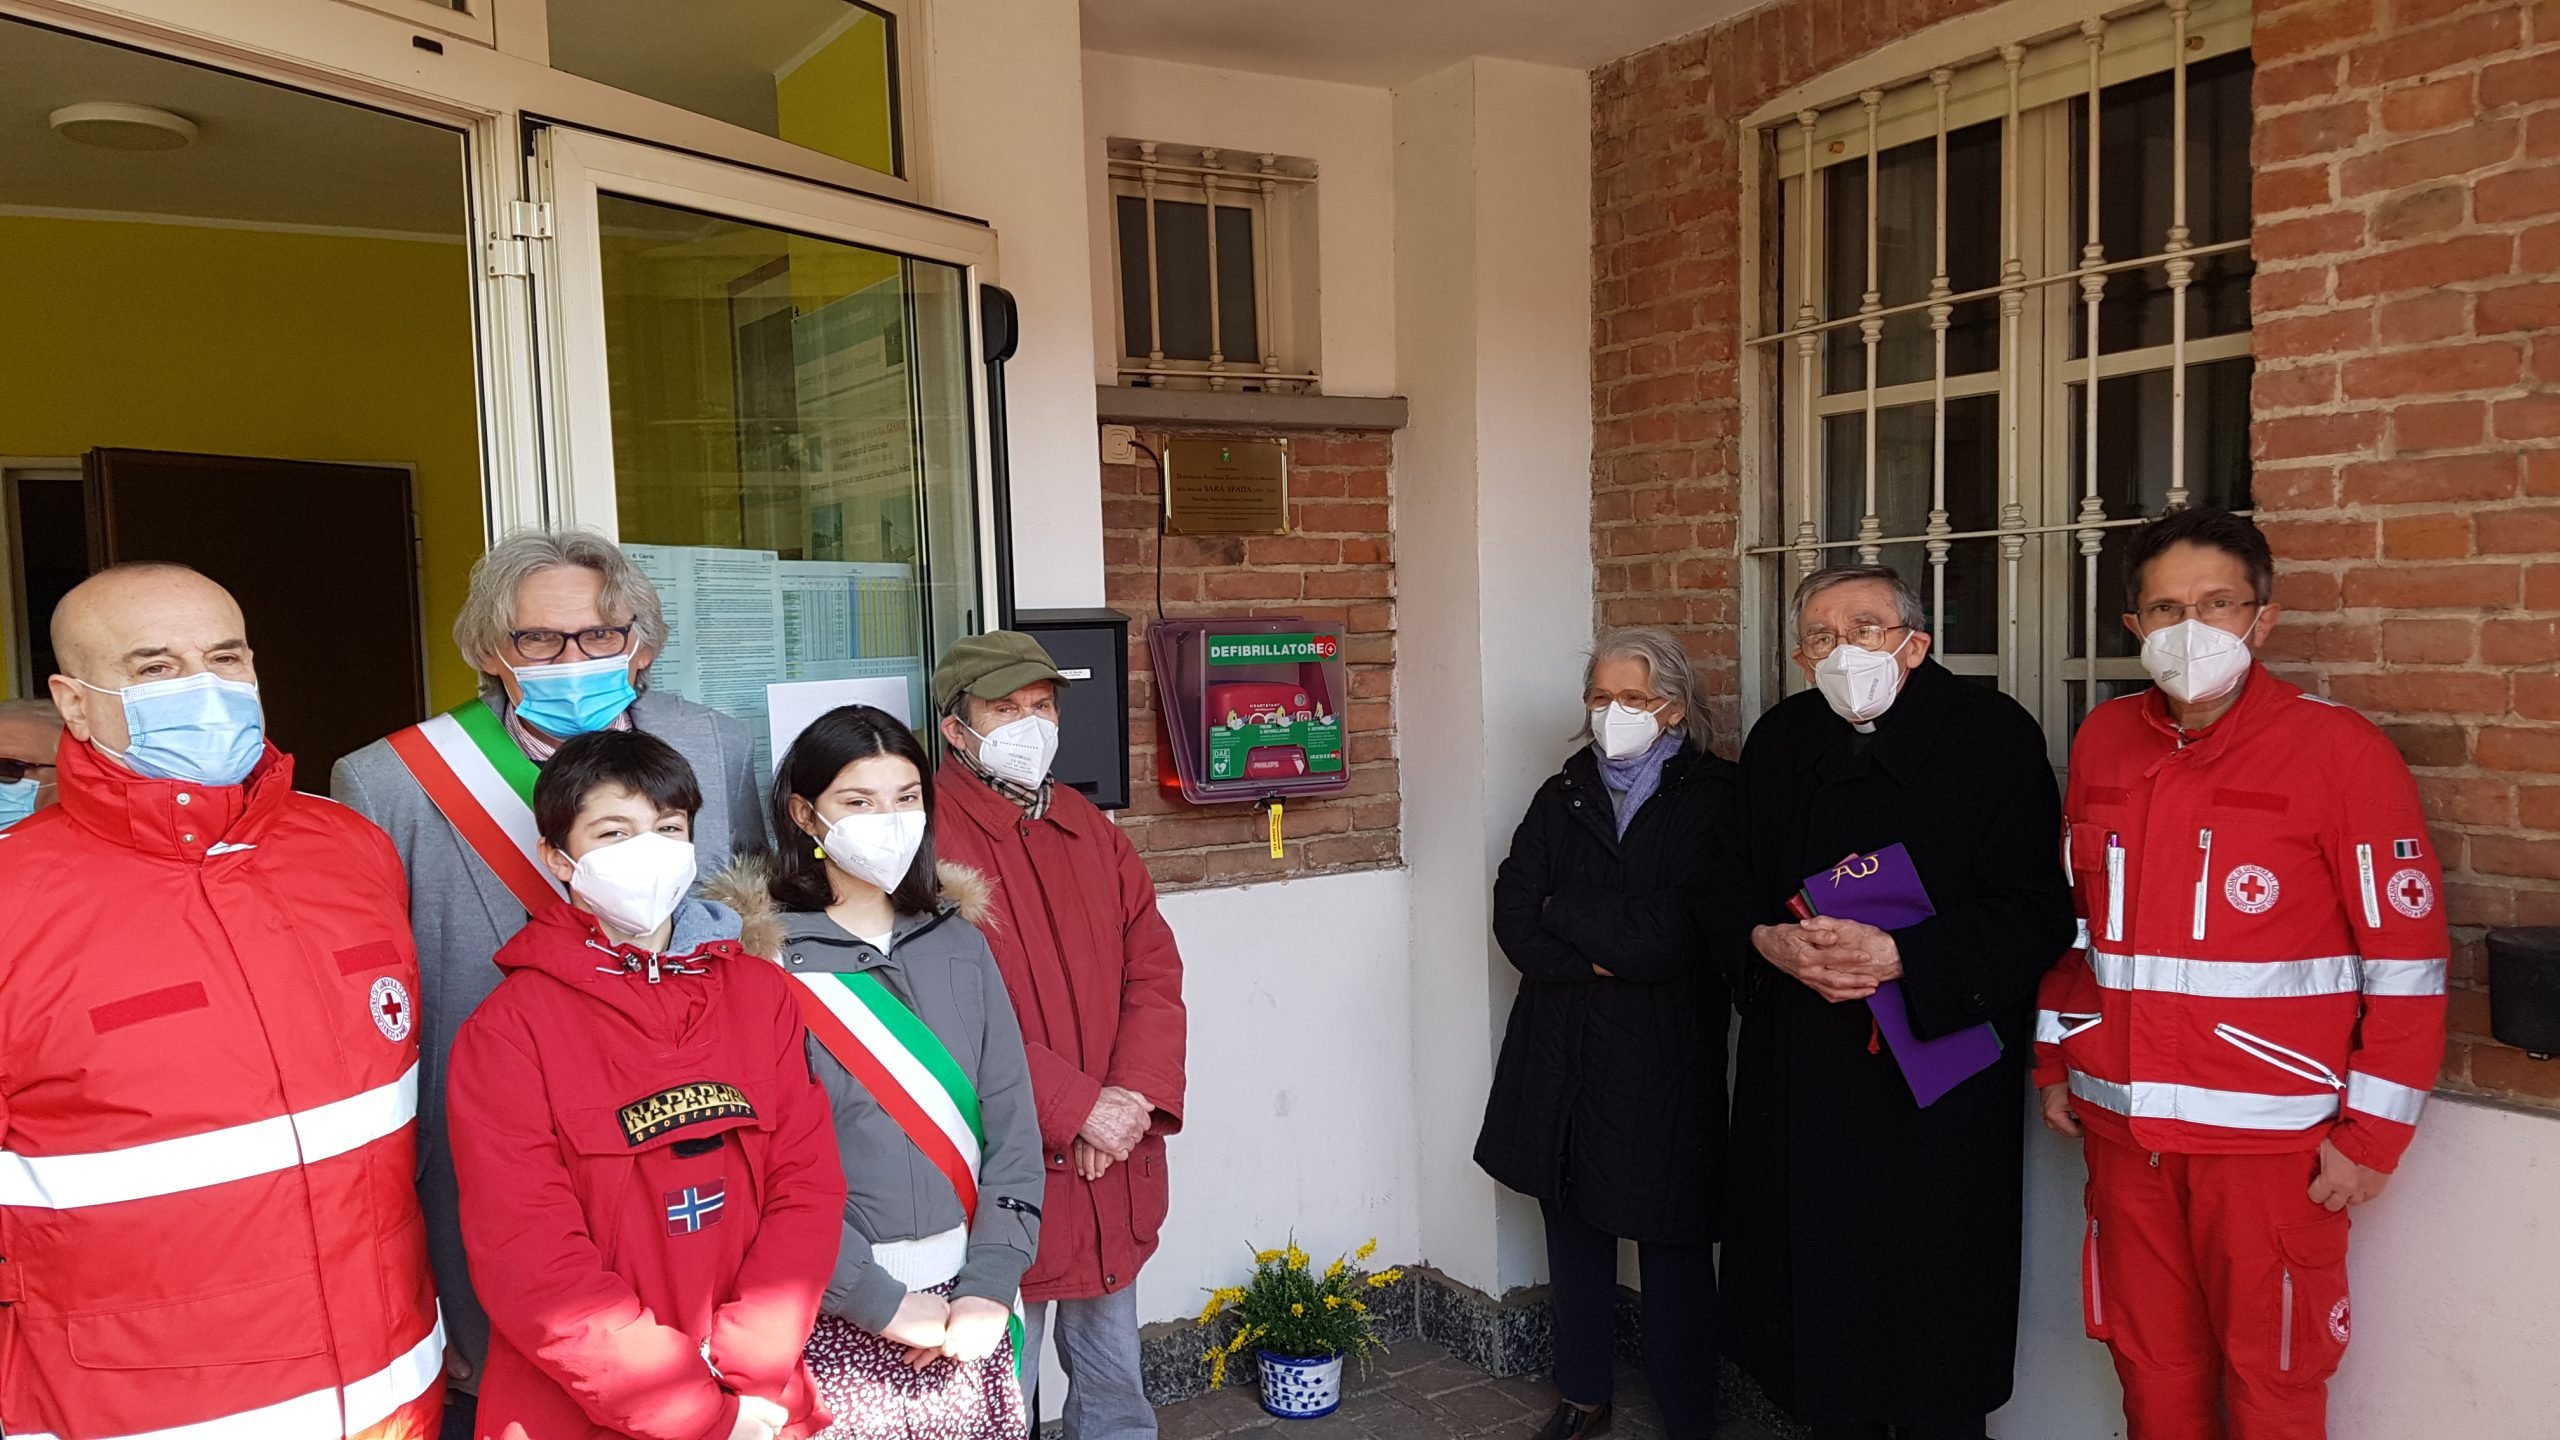 A Giarole un nuovo defibrillatore di ultima generazione in memoria della dottoressa Spada